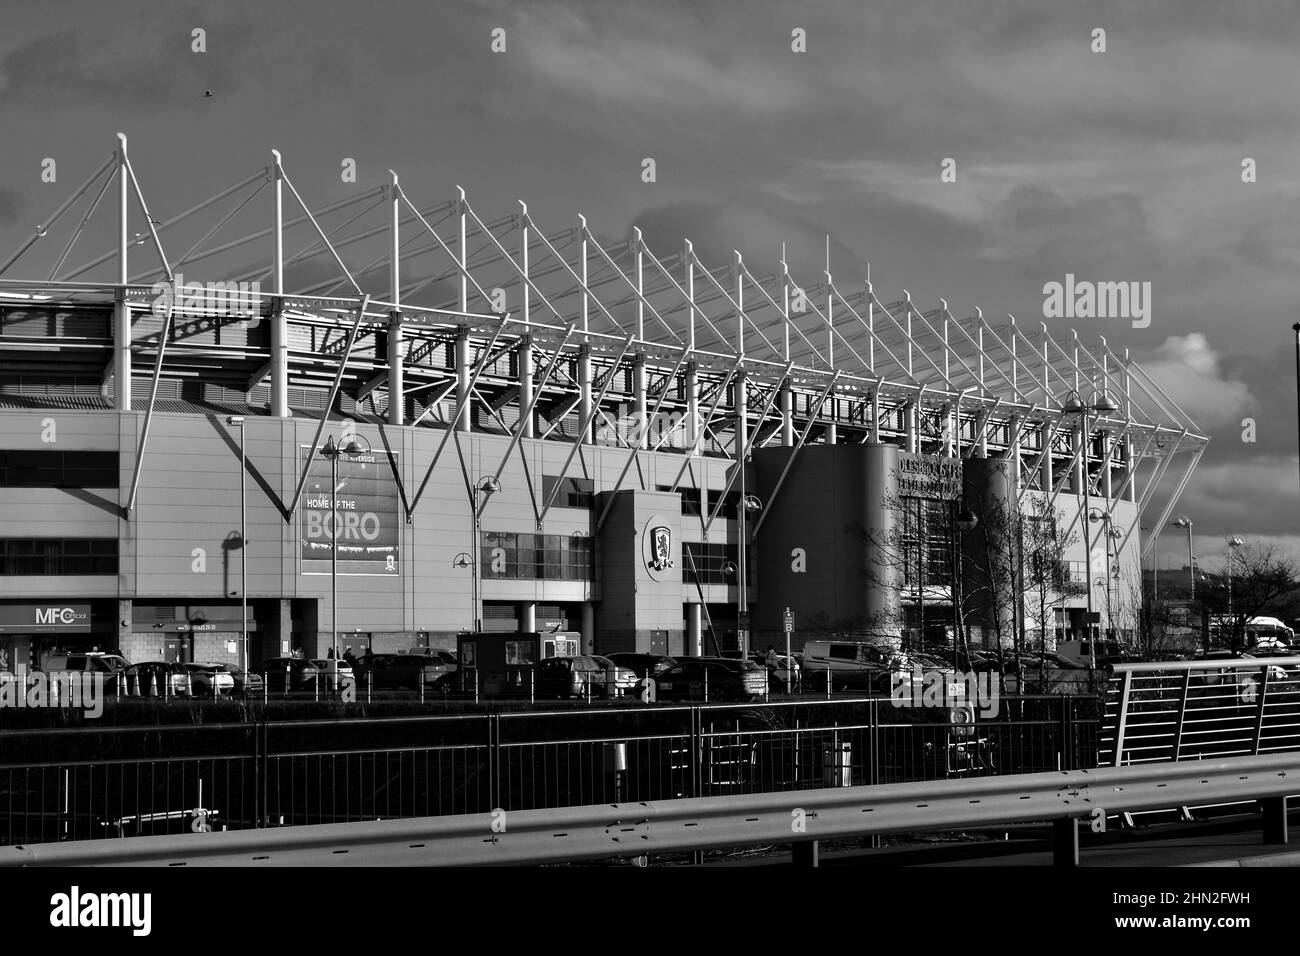 Splendida immagine in bianco e nero con luce naturale del Riverside Stadium, sede dell'EFL Championship Club, Middlesbrough, di proprietà di Steve Gibson. Foto Stock